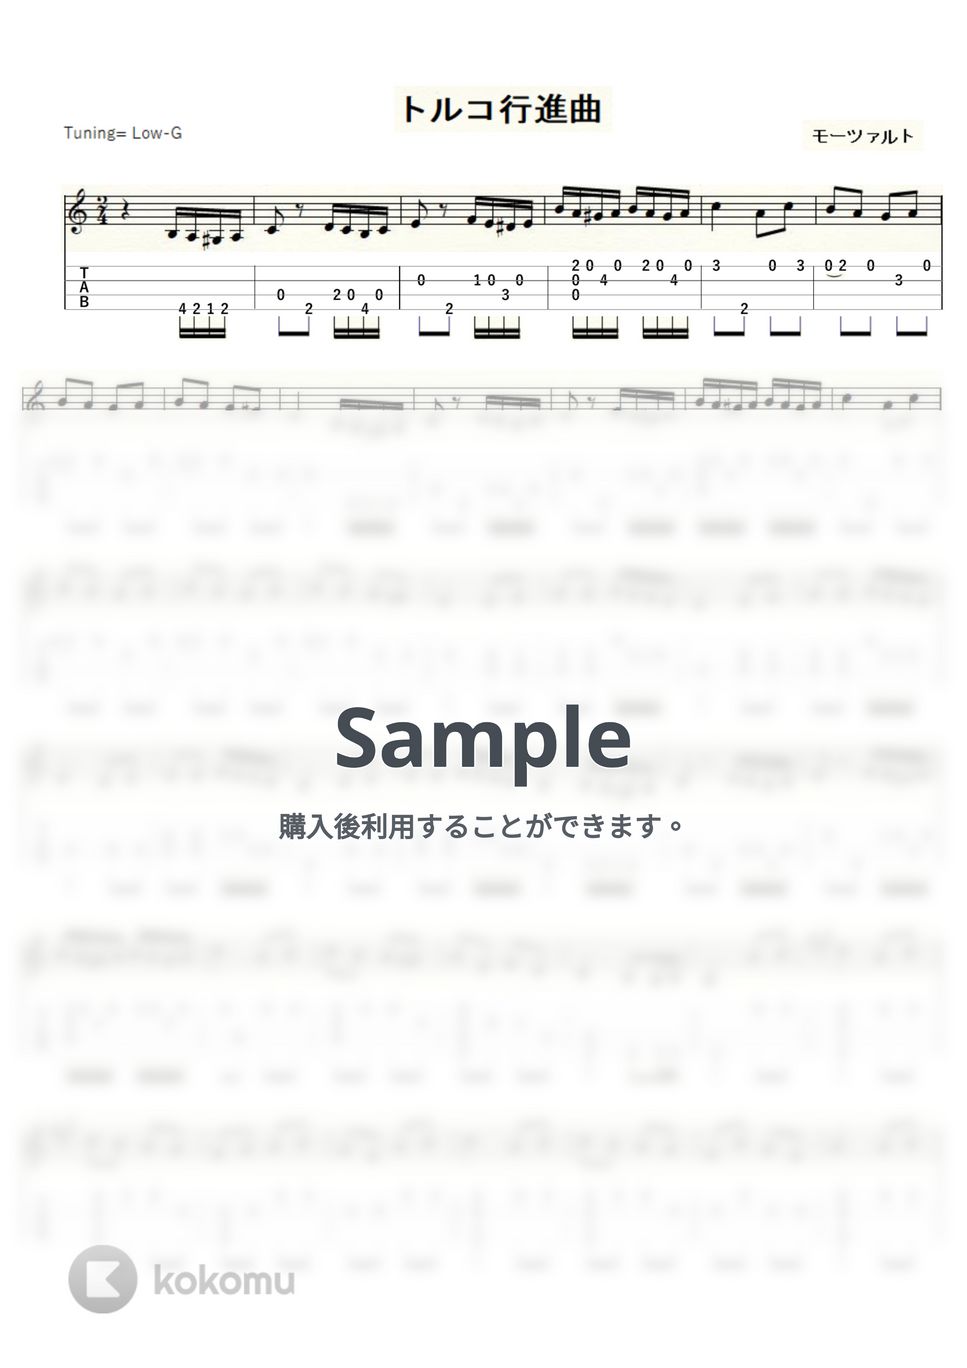 モーツァルト - トルコ行進曲 (ｳｸﾚﾚｿﾛ / Low-G / 中級) by ukulelepapa